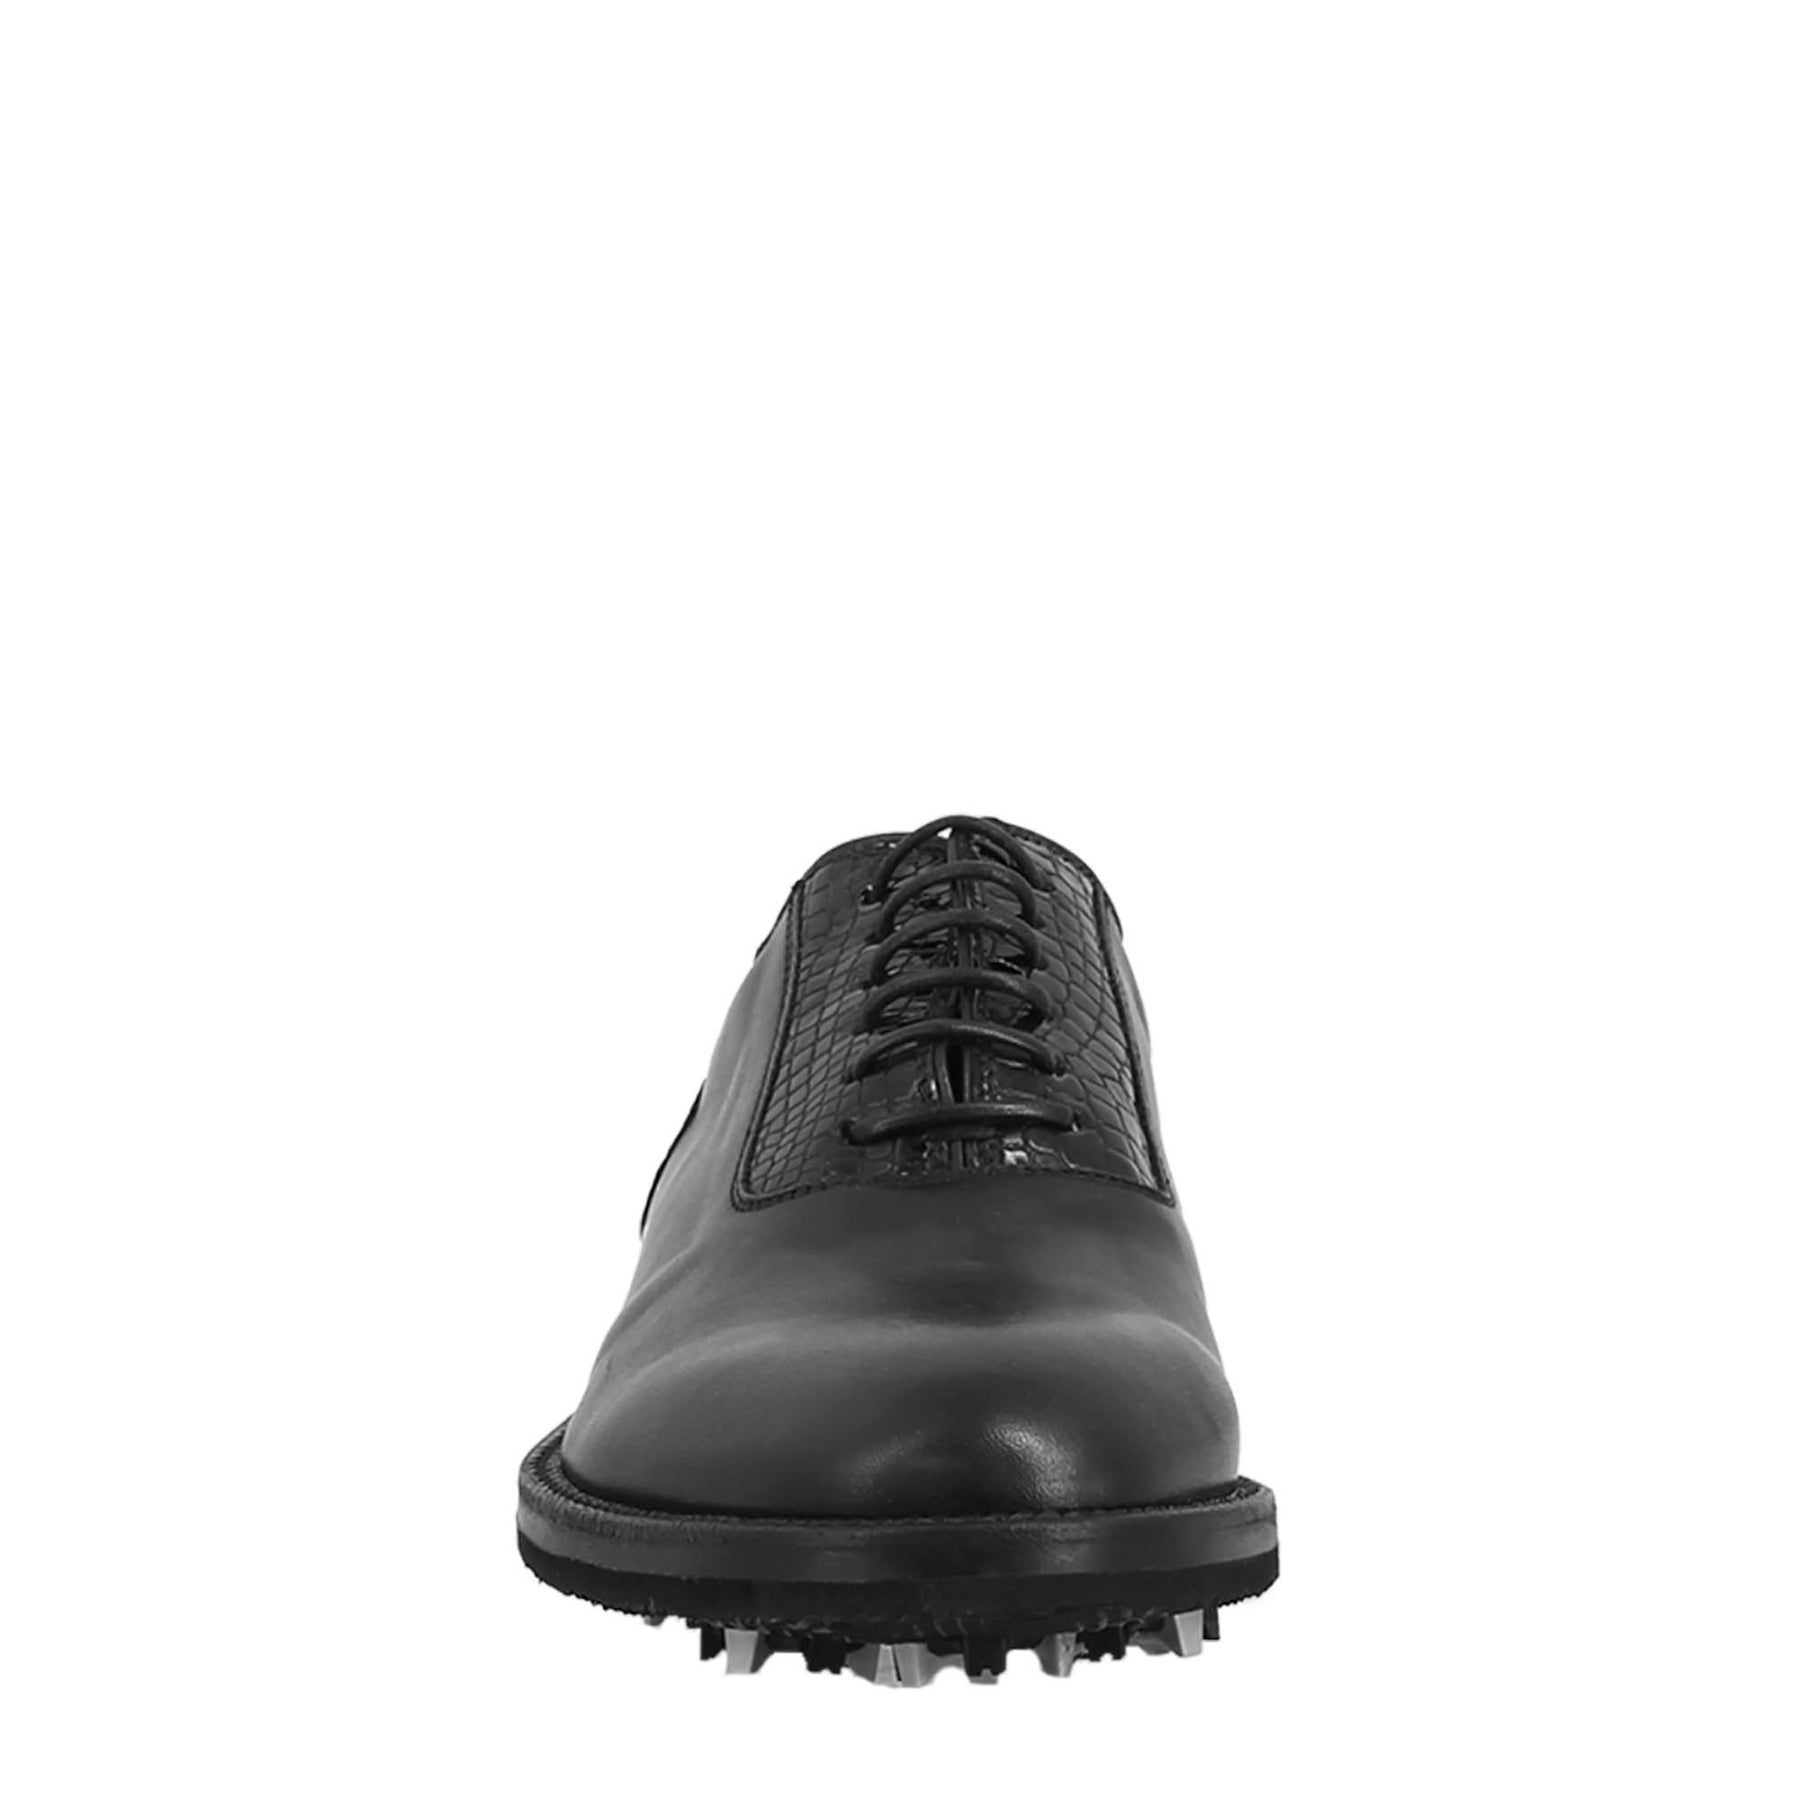 Chaussures de golf pour homme en cuir noir, avec des détails de brogue faits à la main